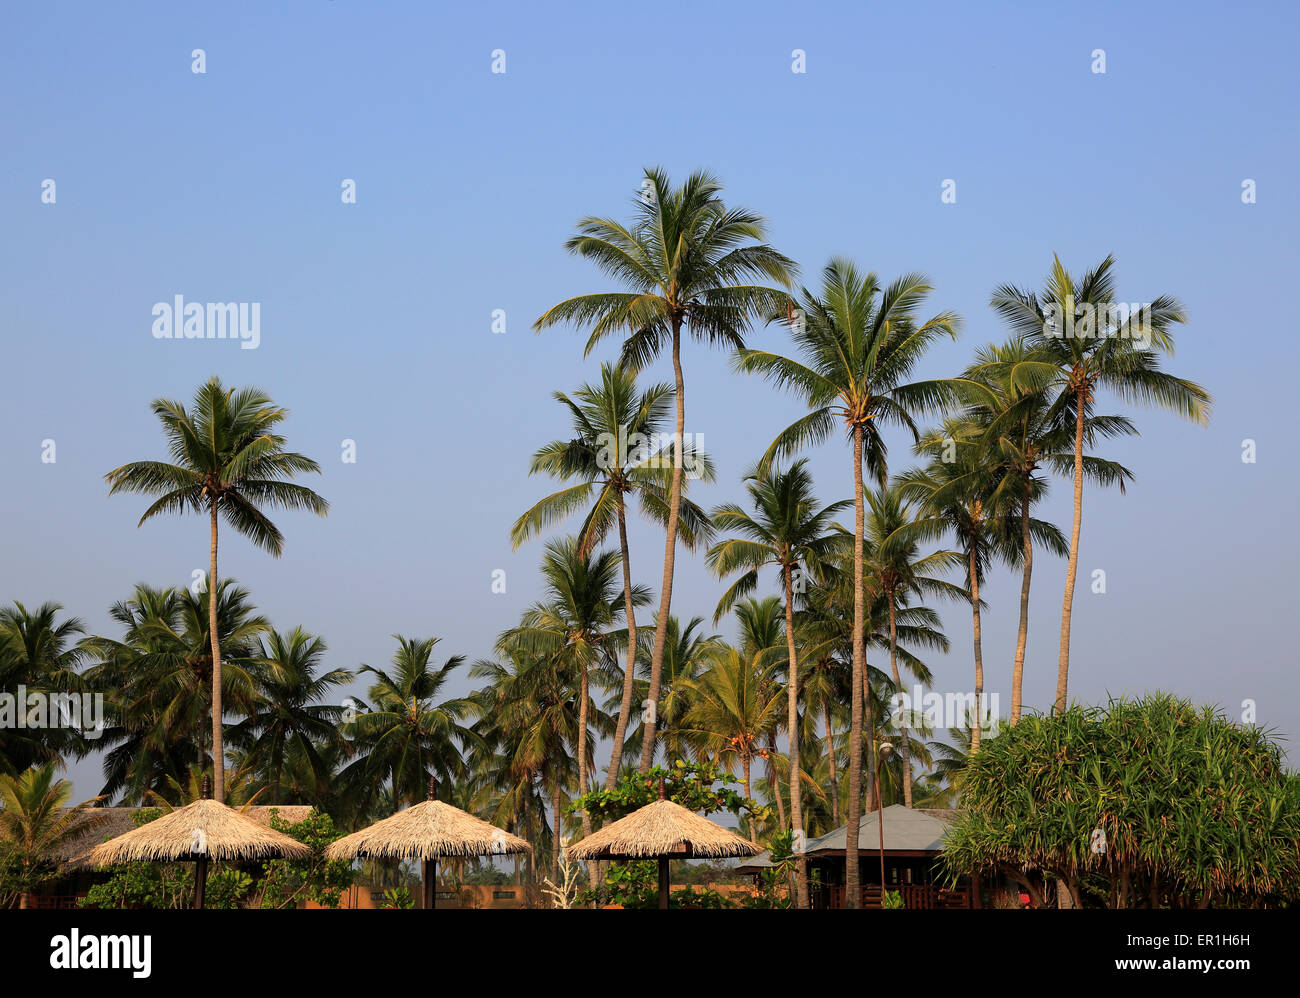 Palmeras de Coco contra el cielo azul profundo, Nilavelli, Trincomalee, Sri Lanka, Asia Foto de stock